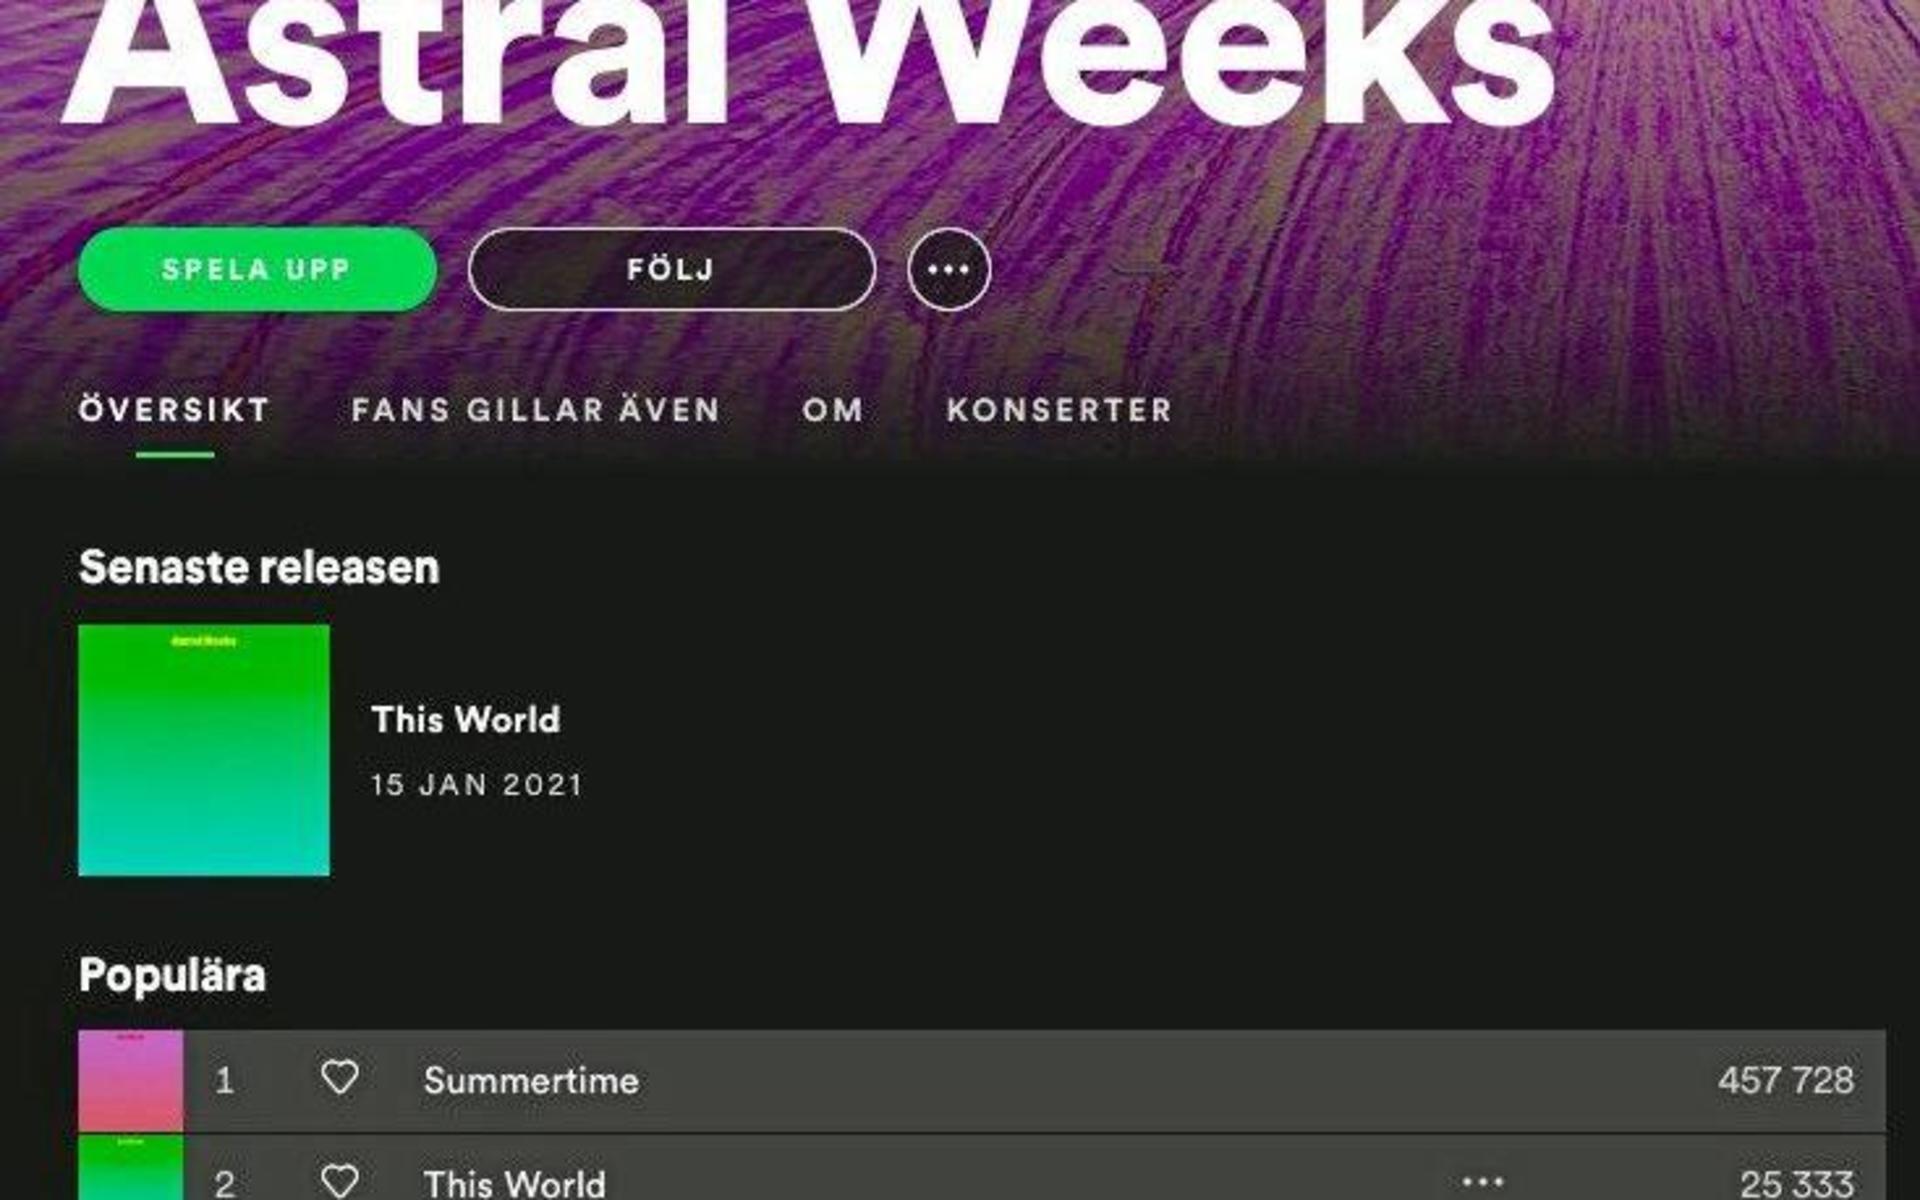 Astra Weeks två första singlar lyssnas flitigt på Spotify.